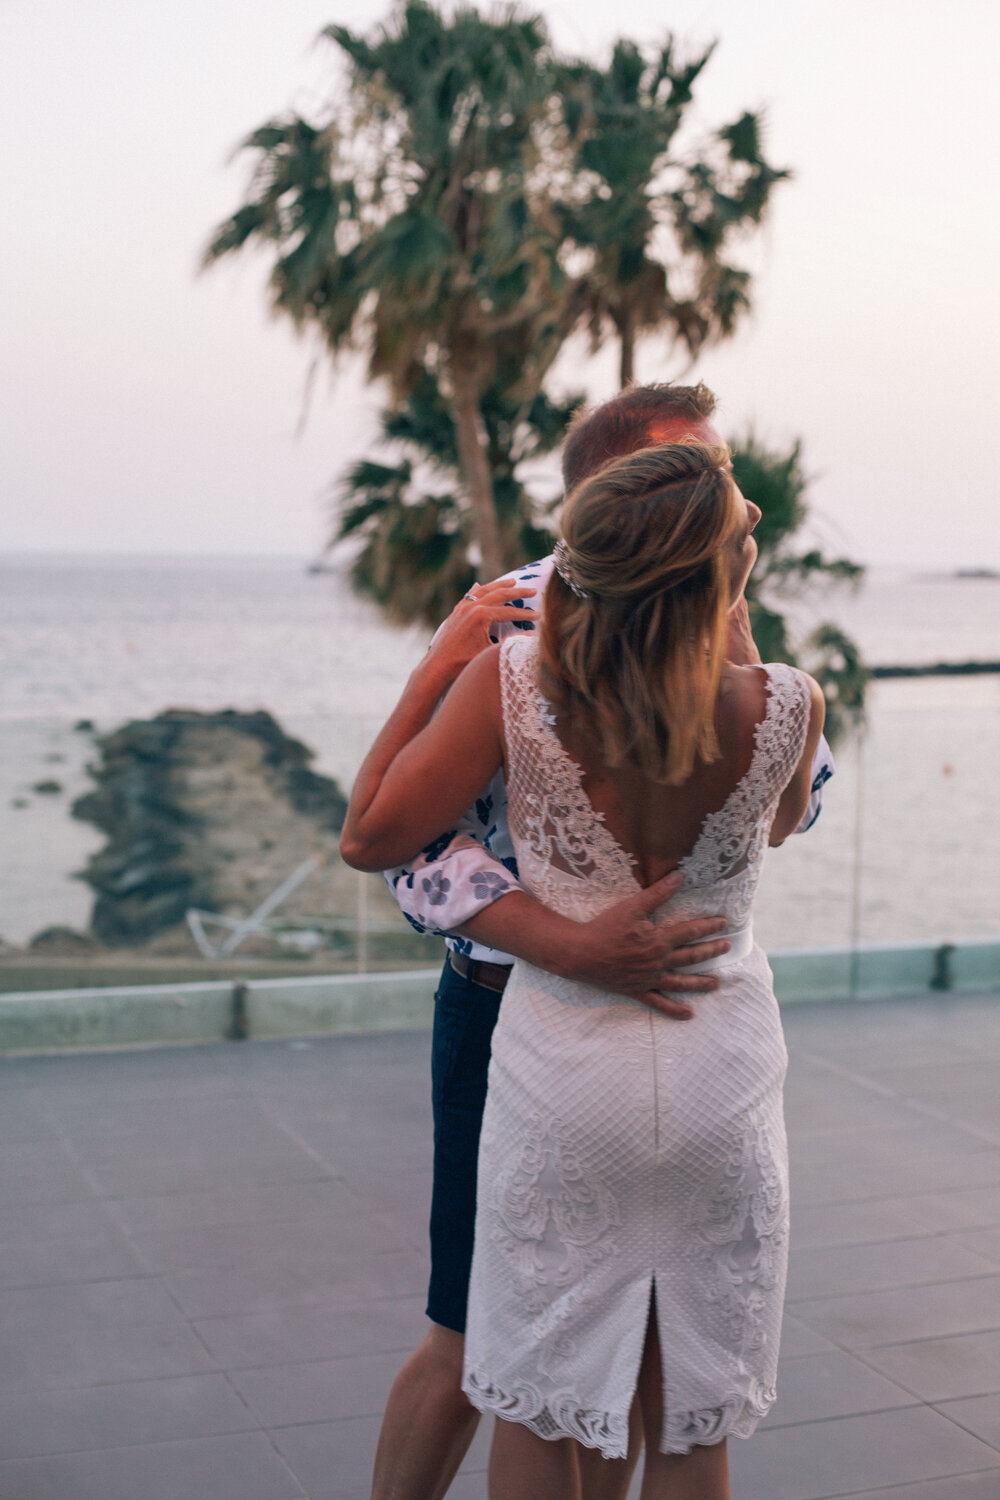 05.26.19Joanne&Sean Wedding 2019 Cyprus*-150.jpg